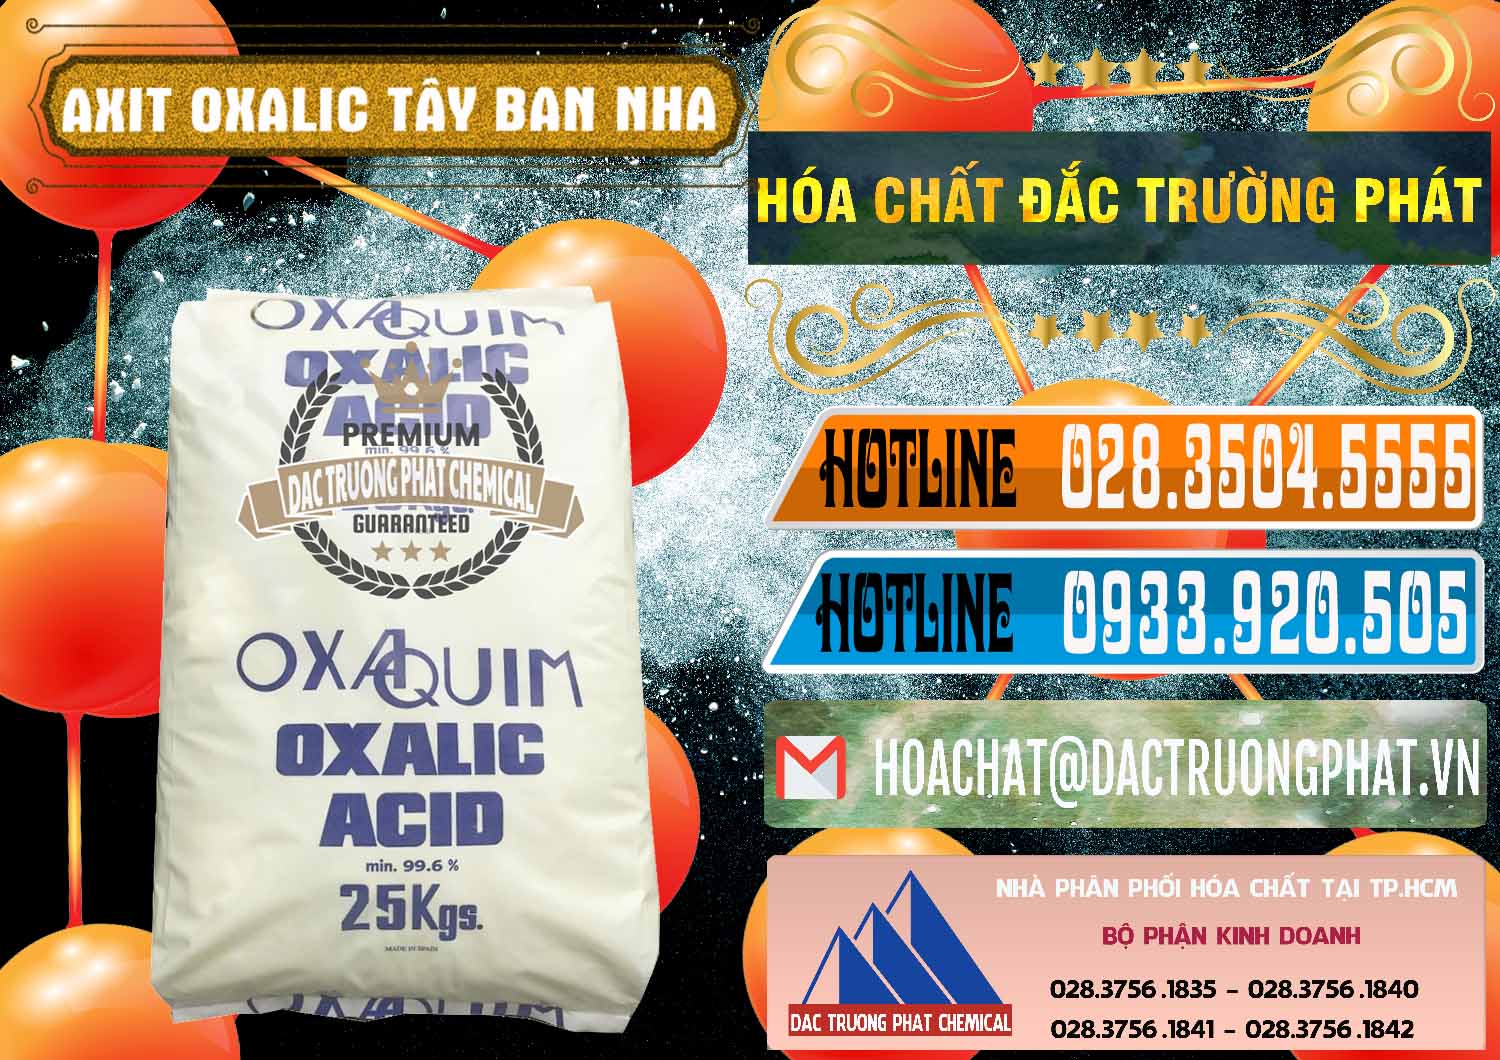 Cty chuyên bán ( phân phối ) Acid Oxalic – Axit Oxalic 99.6% Tây Ban Nha Spain - 0269 - Đơn vị phân phối ( bán ) hóa chất tại TP.HCM - stmp.net